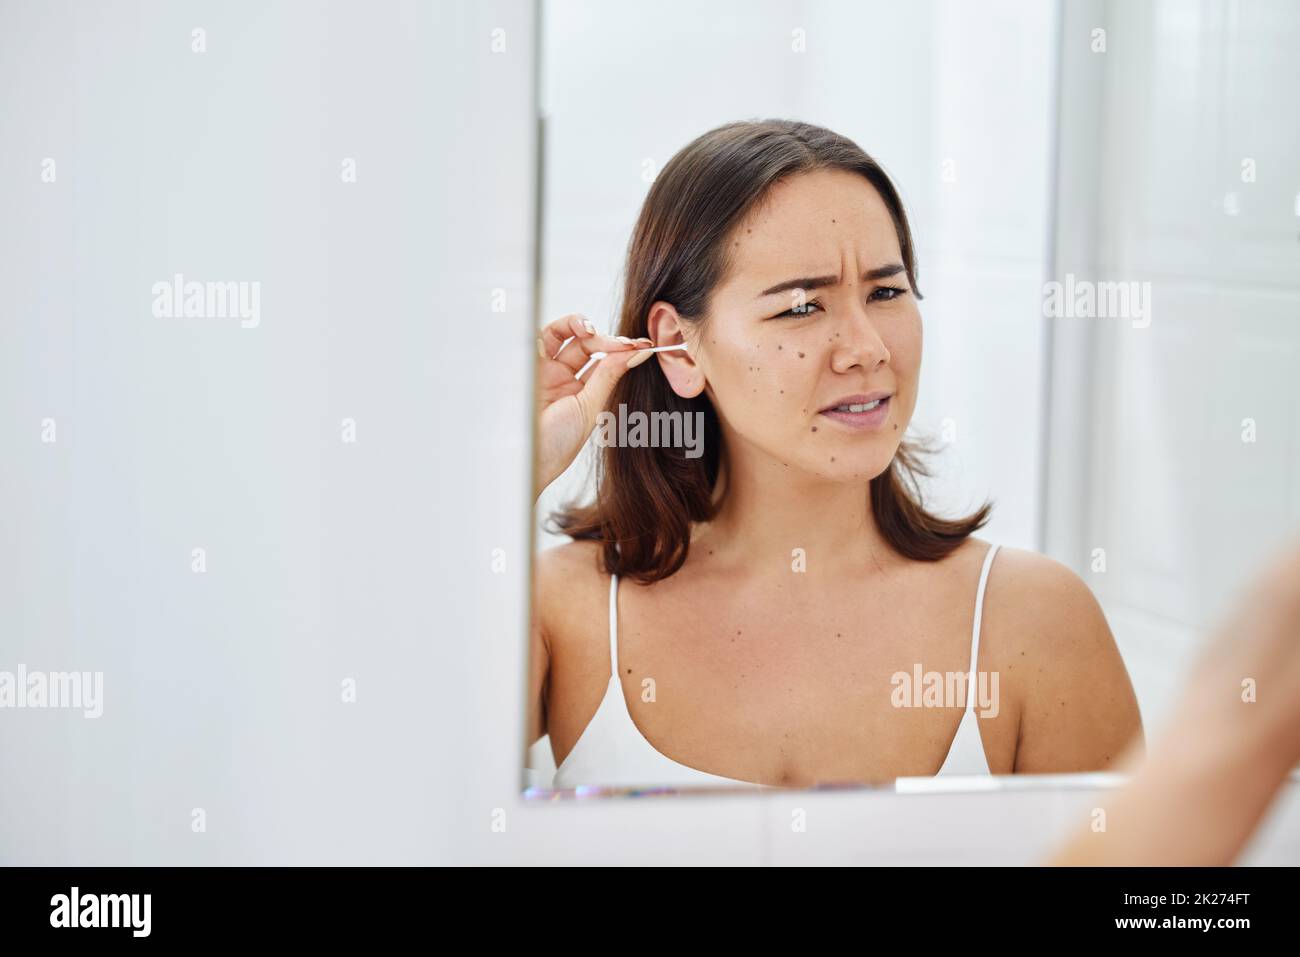 Das ist so unangenehm. Aufnahme einer jungen Frau, die ihre Ohren während ihrer morgendlichen Routine zu Hause mit einem Wattestäbchen putzt. Stockfoto